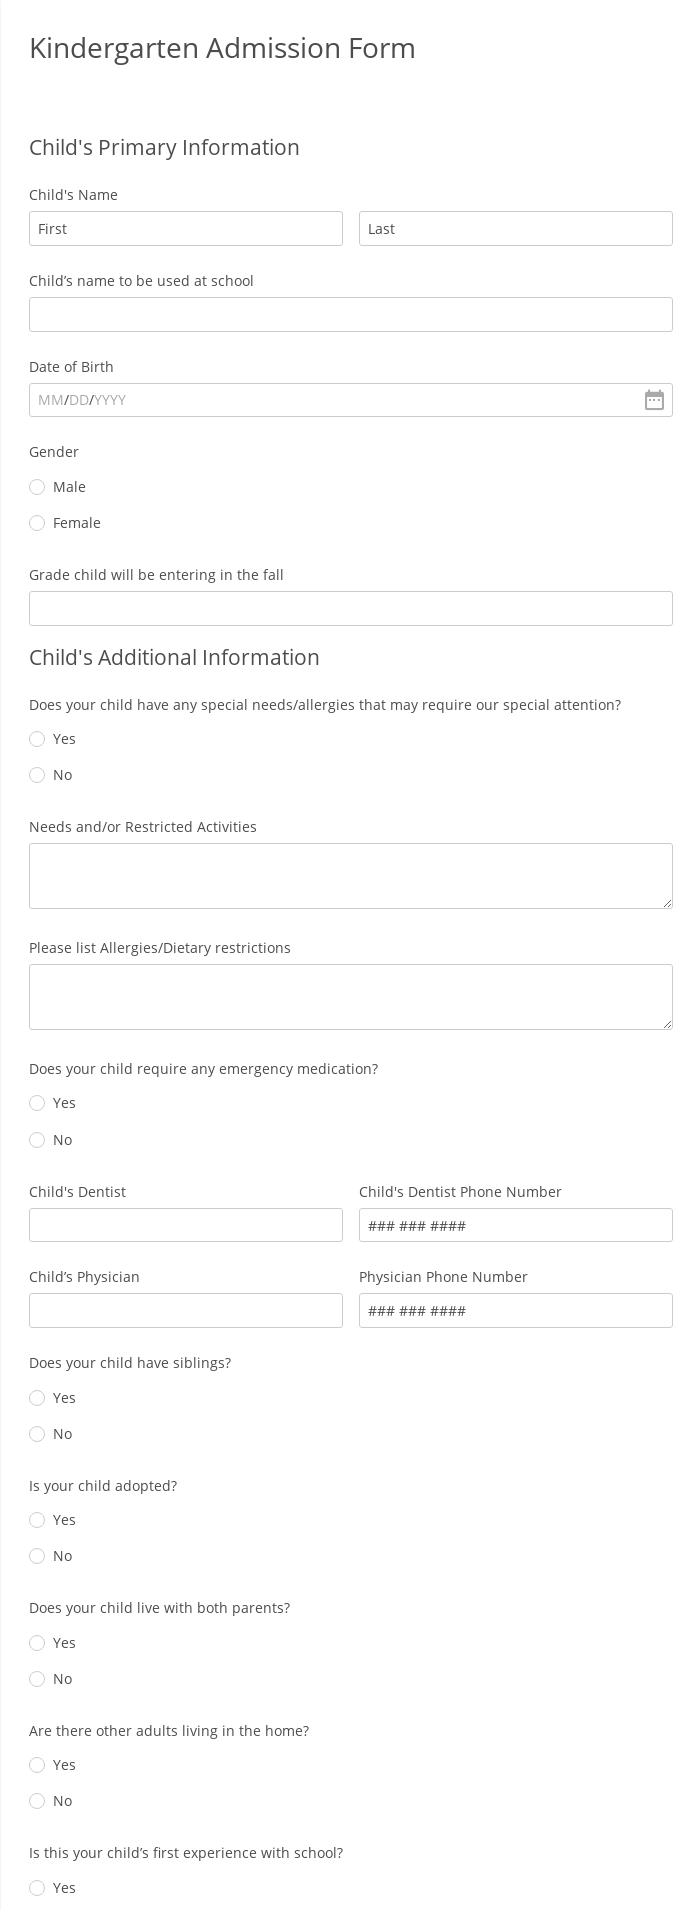 Kindergarten Admission Form